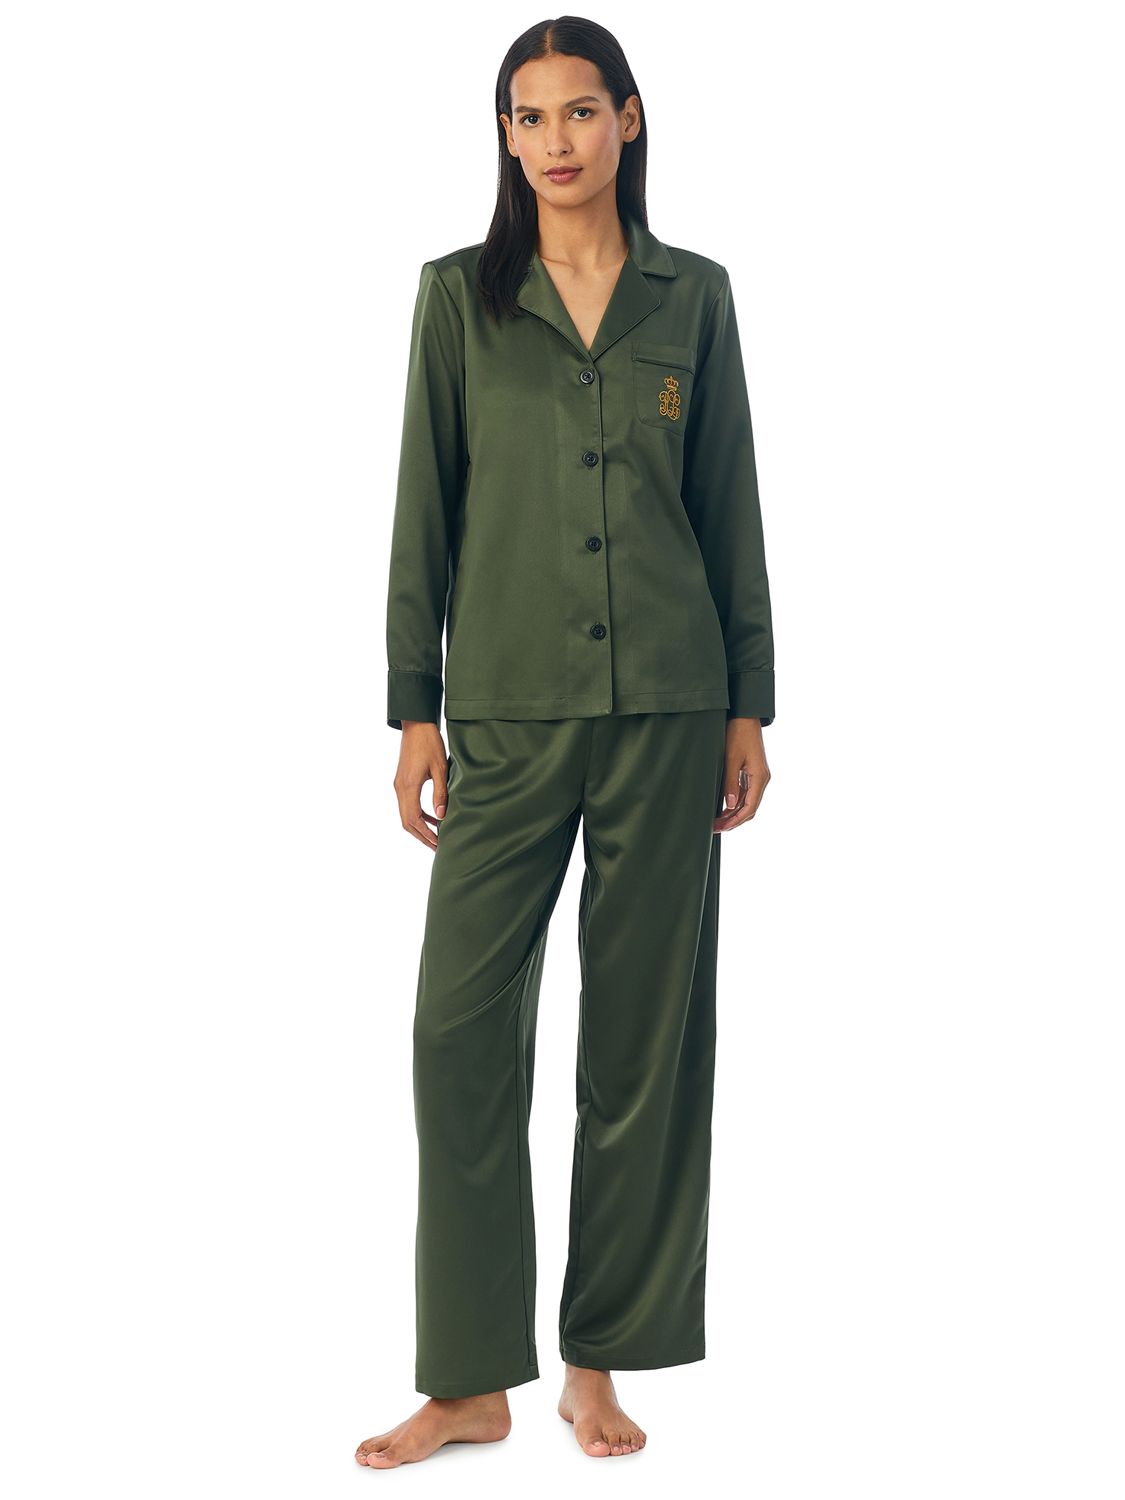 Lauren Ralph Lauren Solid Satin Long Sleeve Pyjama Set, Green at